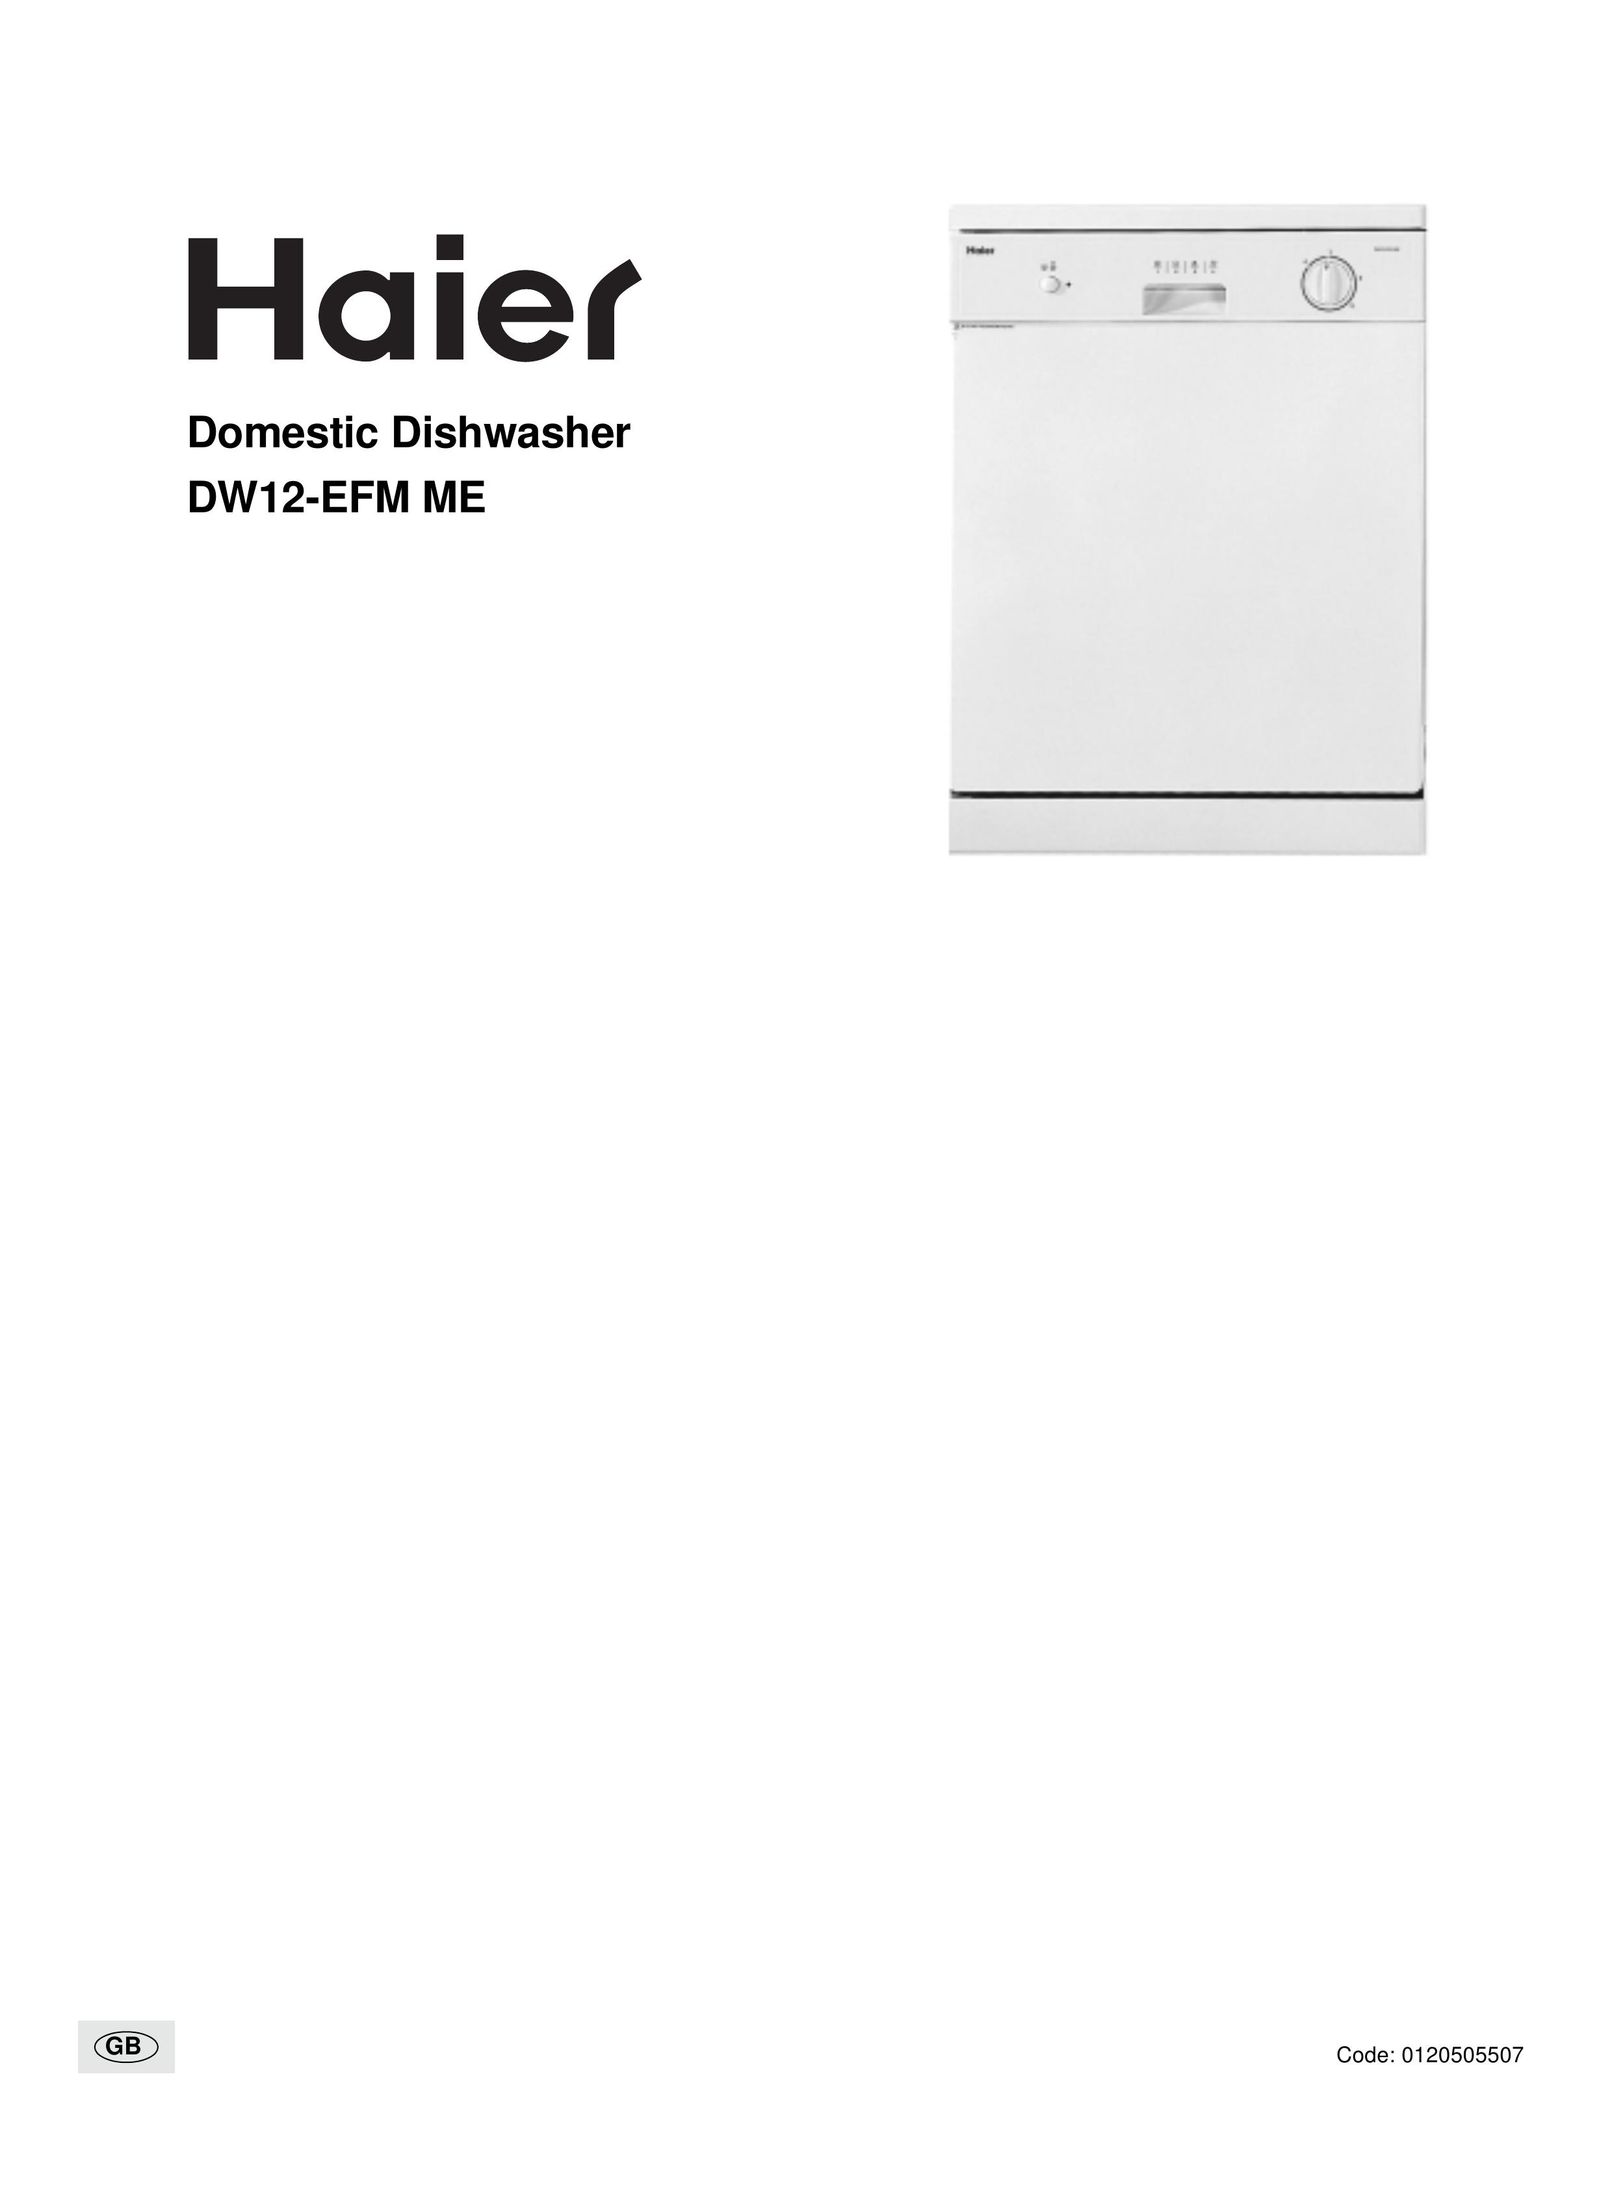 Haier DW12-EFM ME Dishwasher User Manual